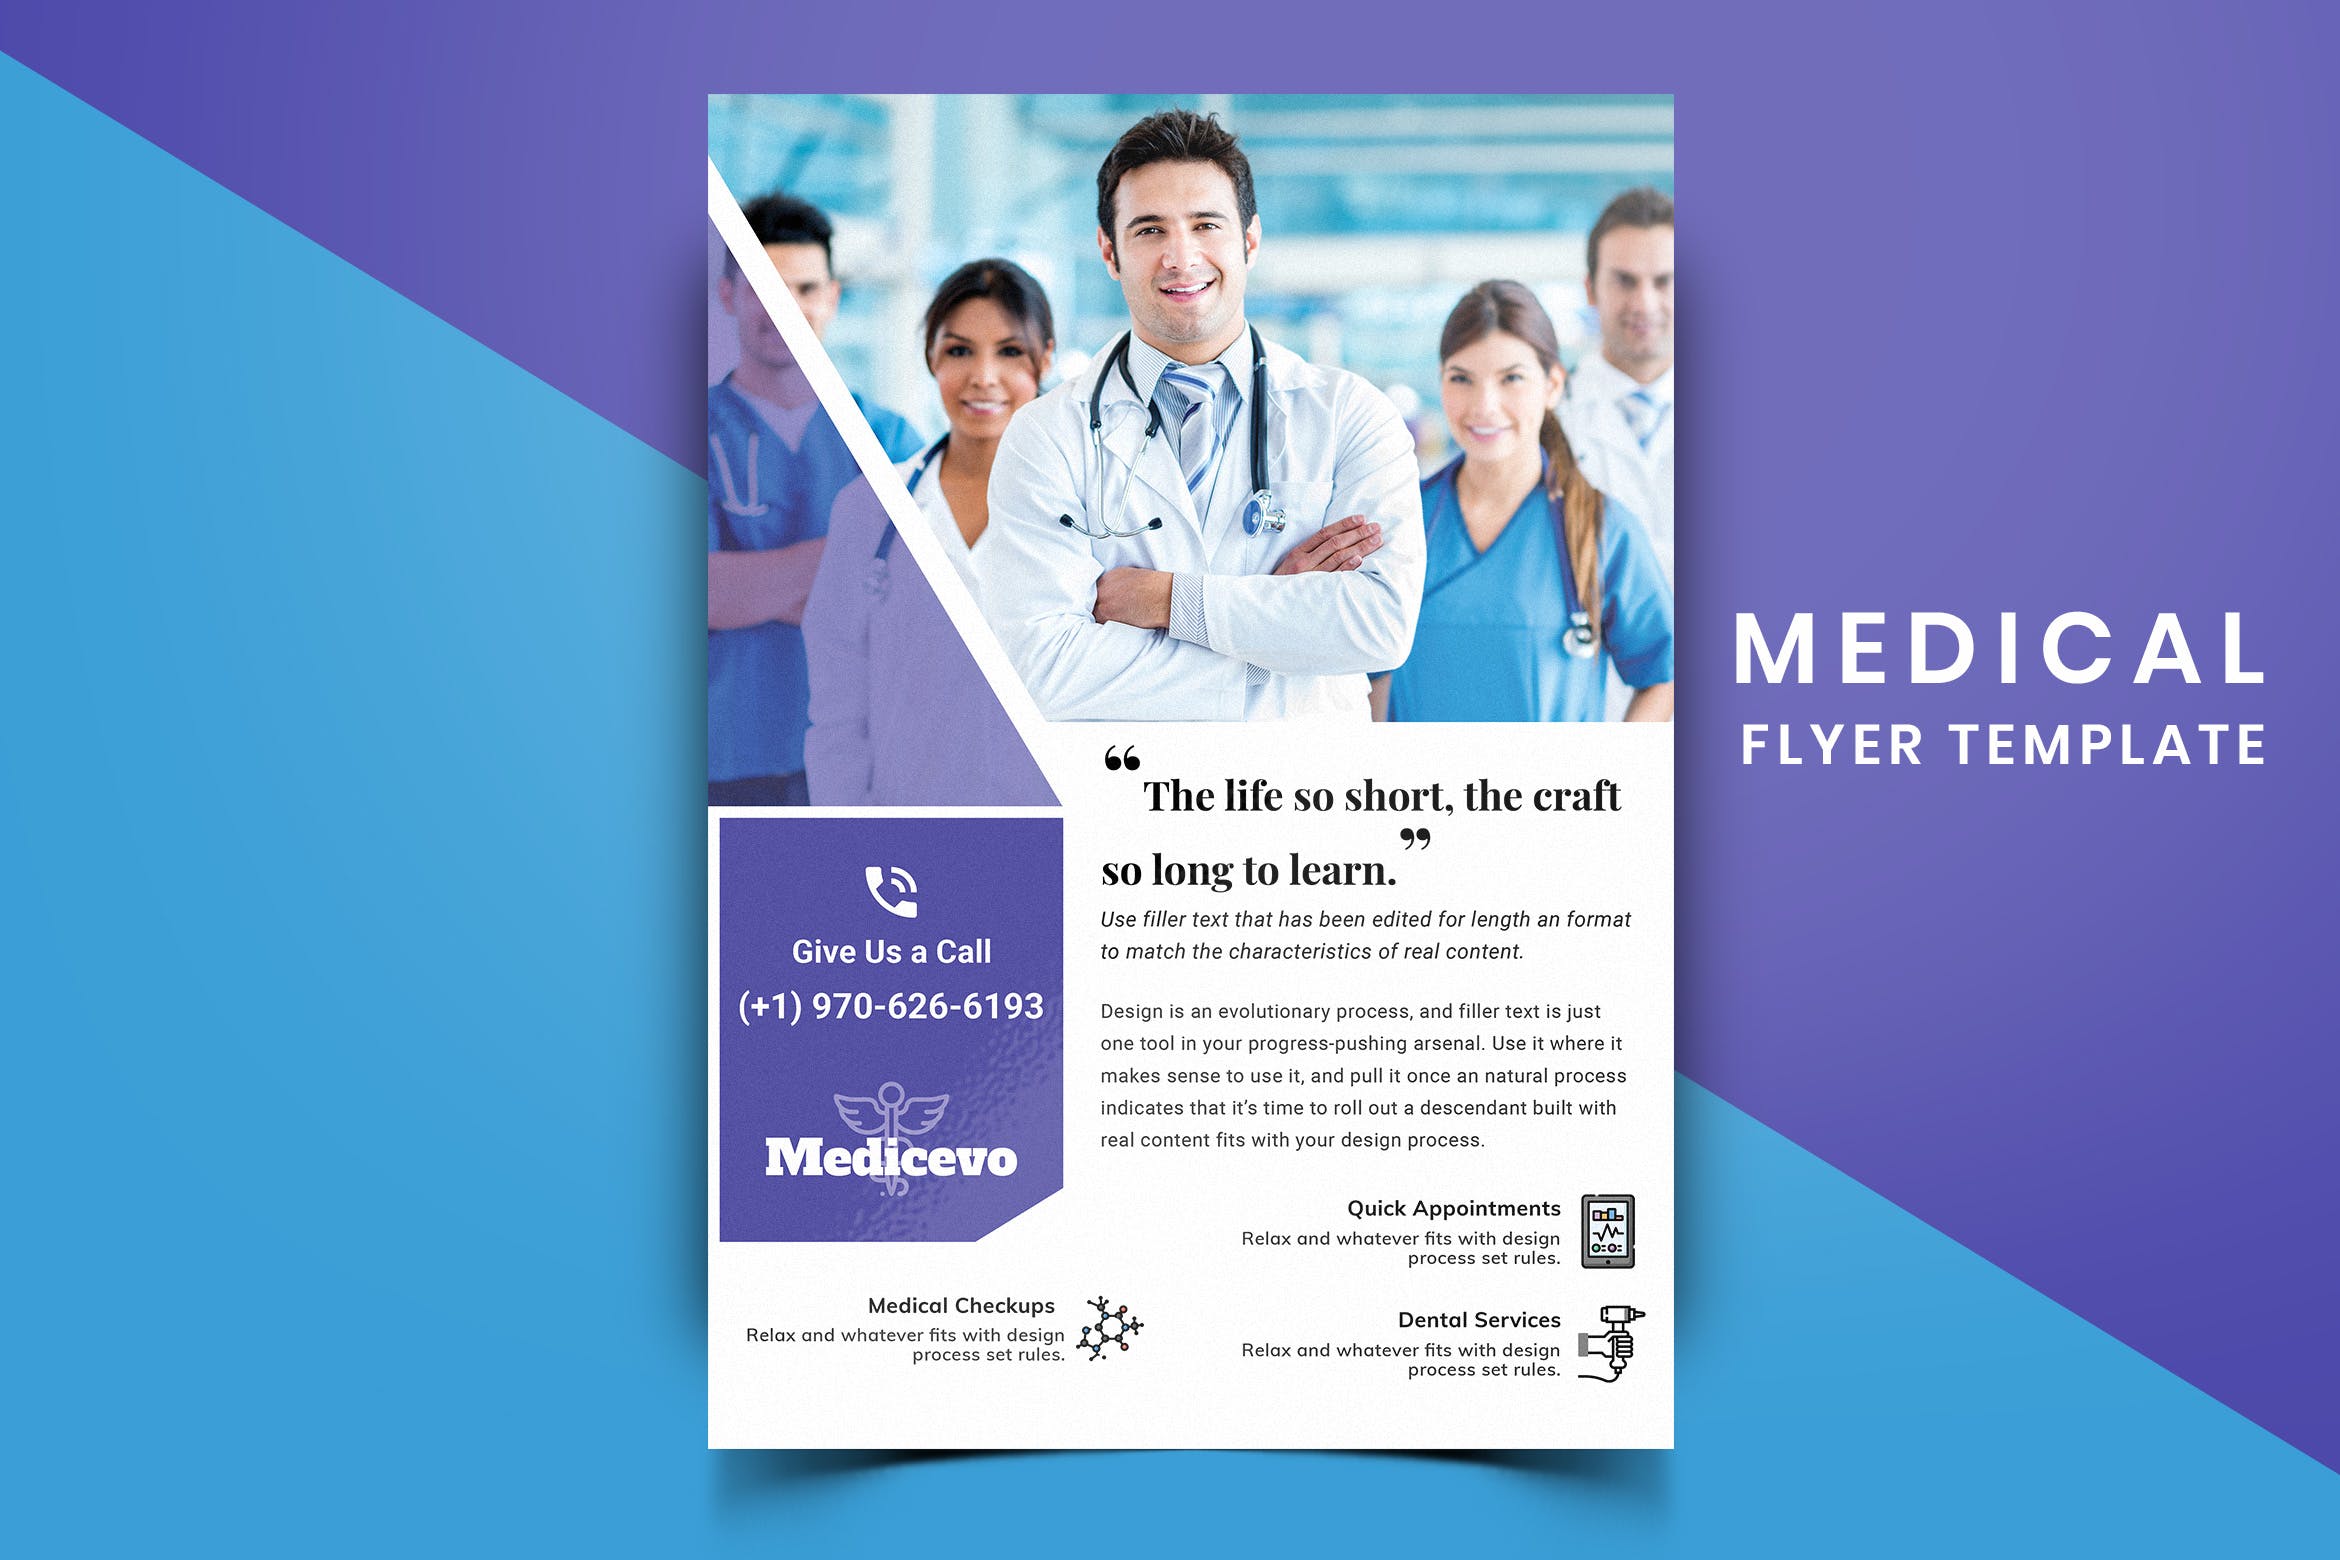 医院诊所医疗主题宣传单排版设计模板v08 Medical Flyer Template-08插图